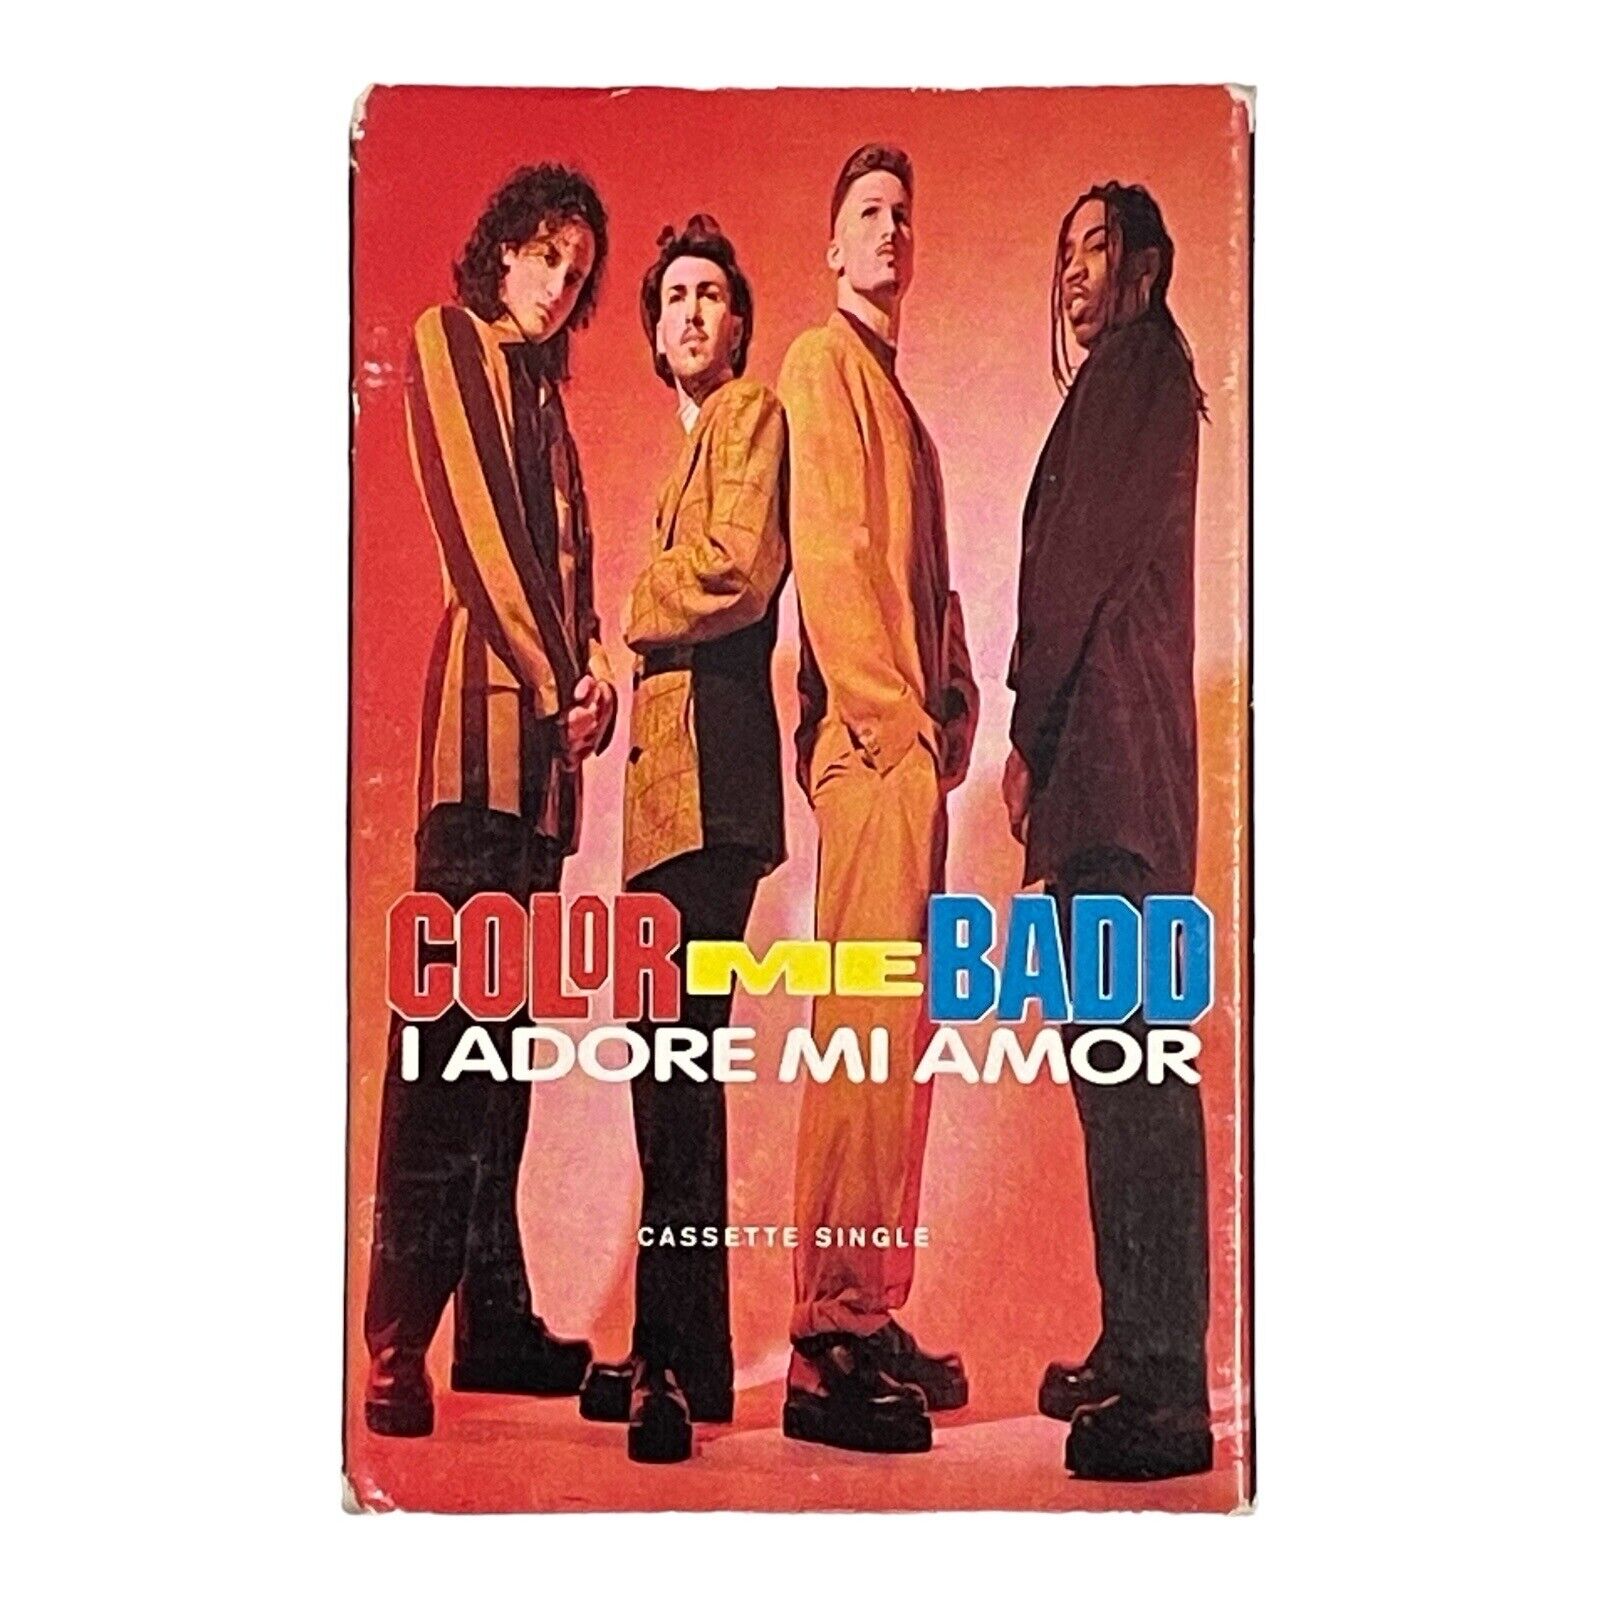 VTG 1991 I Adore Mi Amor [Single] by Color Me Badd (Cassette, Warner Bros.)